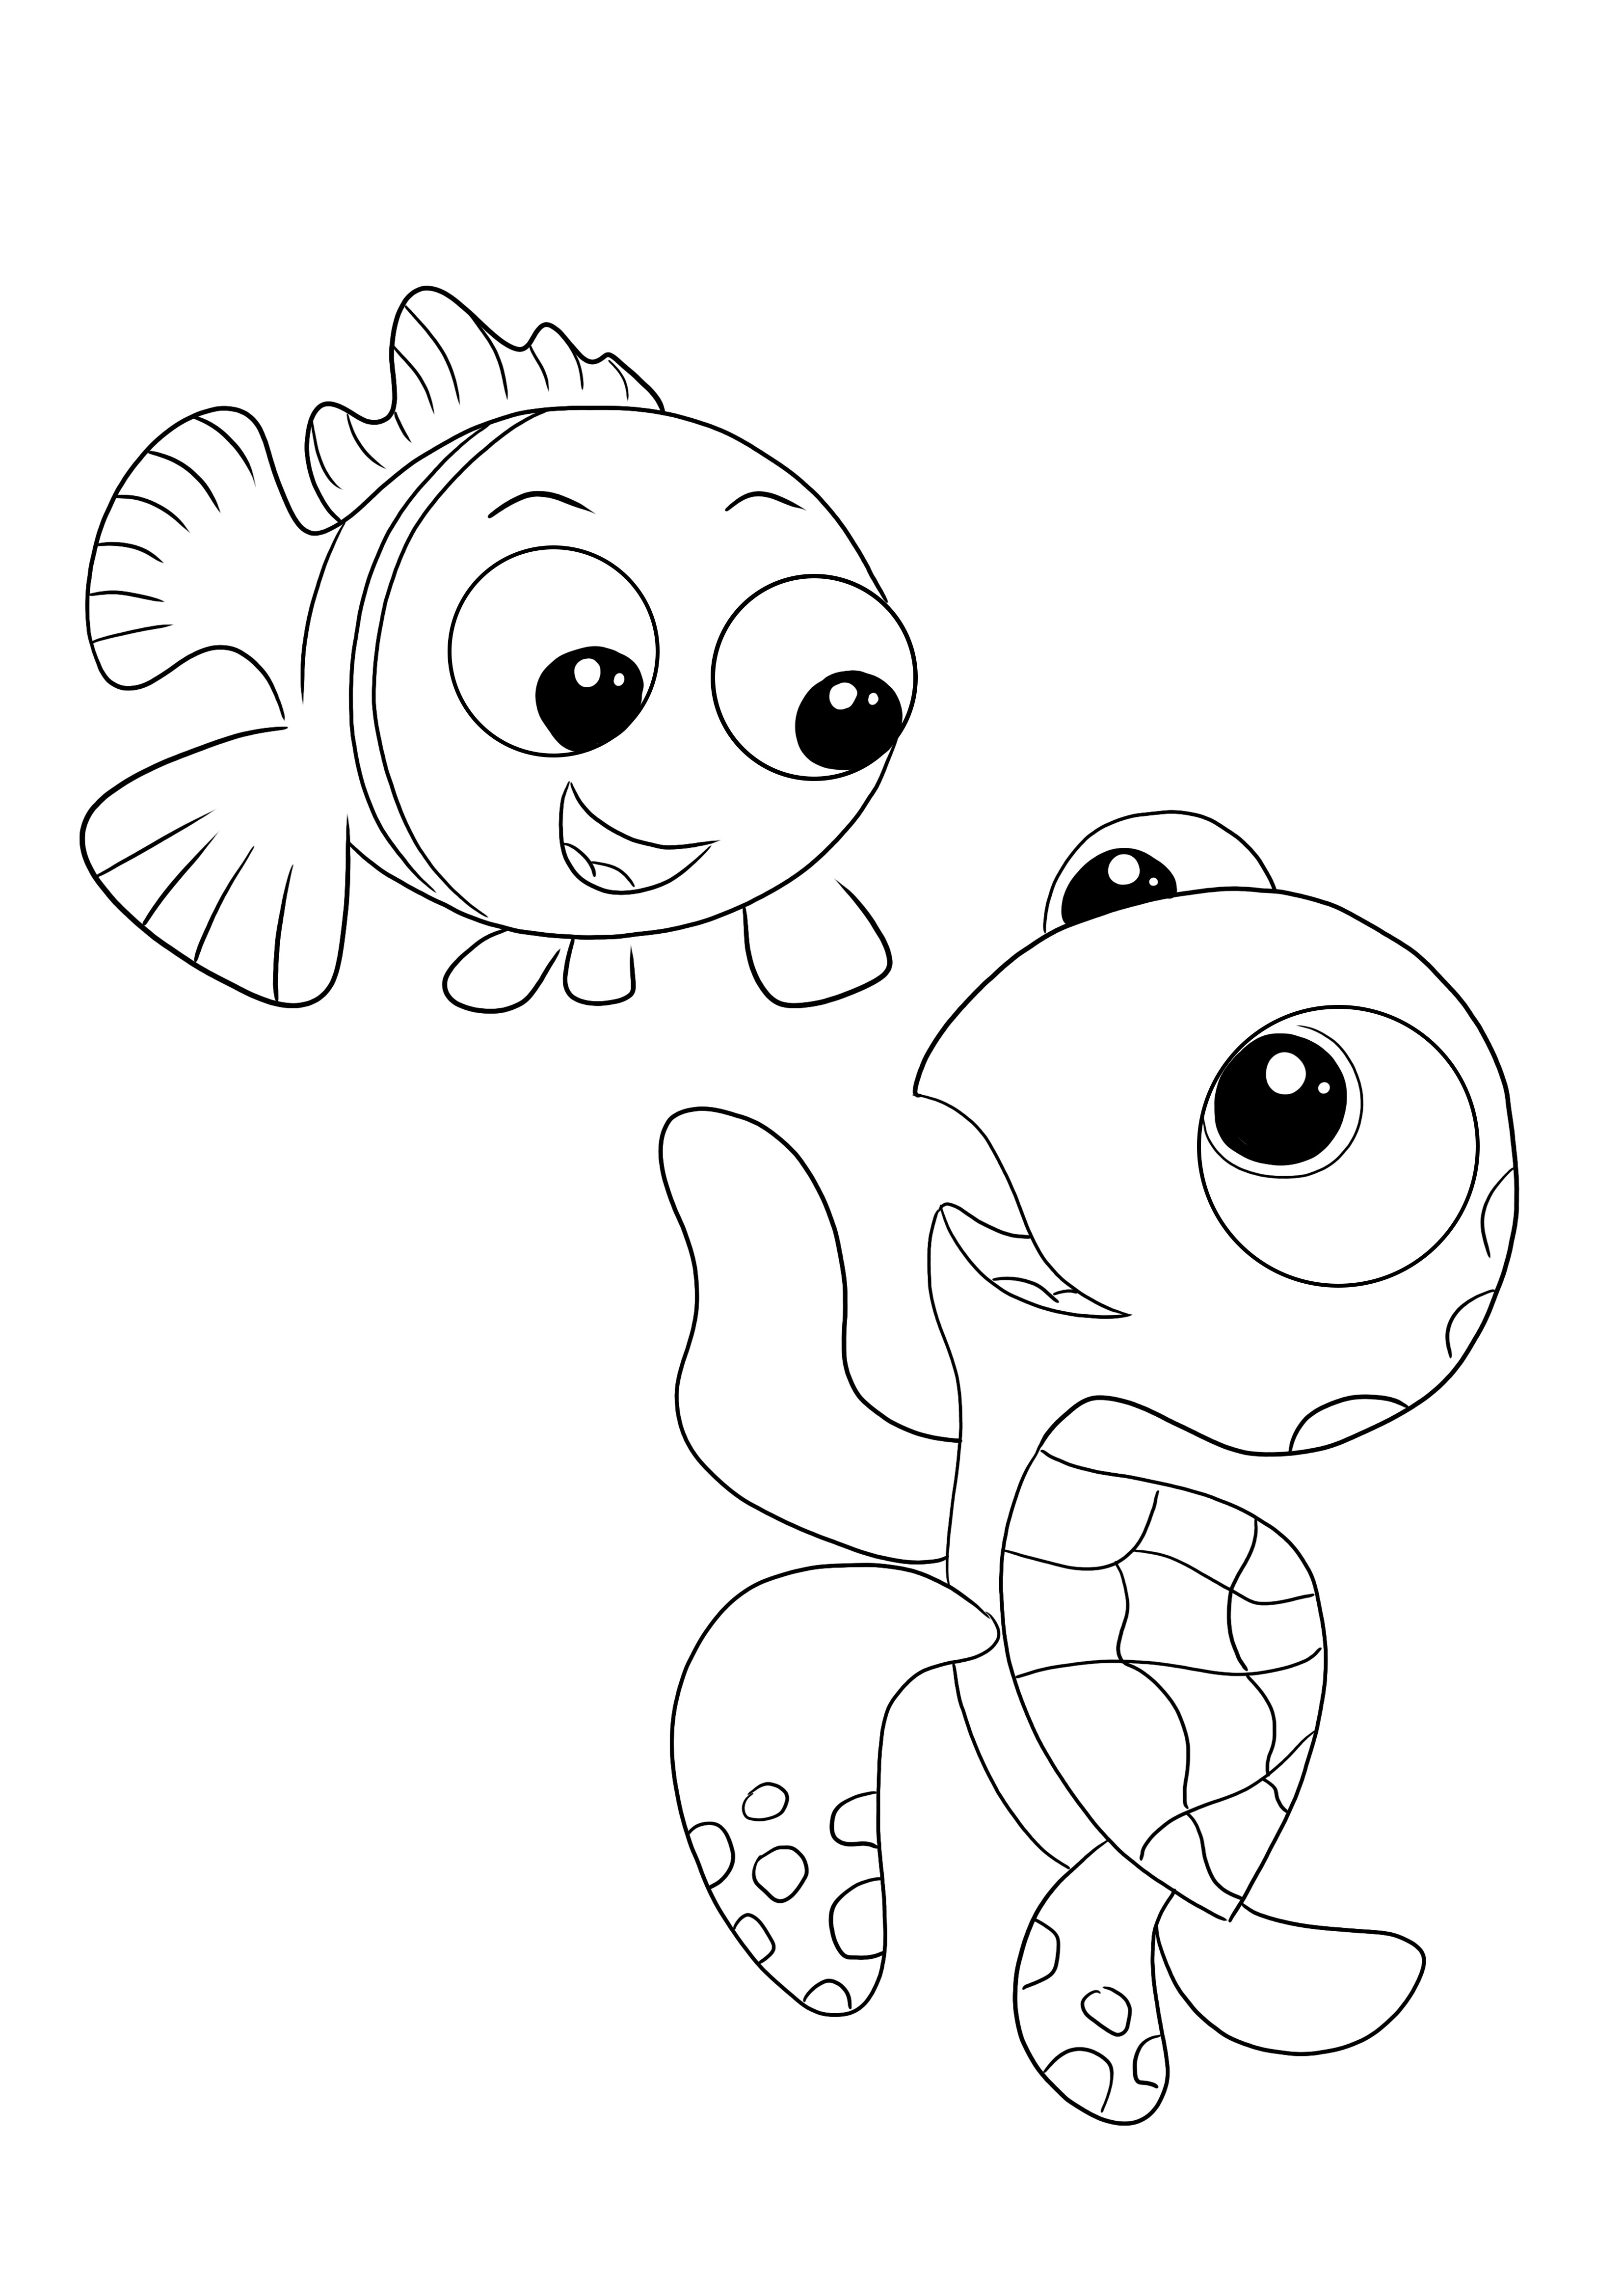 Coloriage et impression gratuit de Crush et Nemo pour les enfants